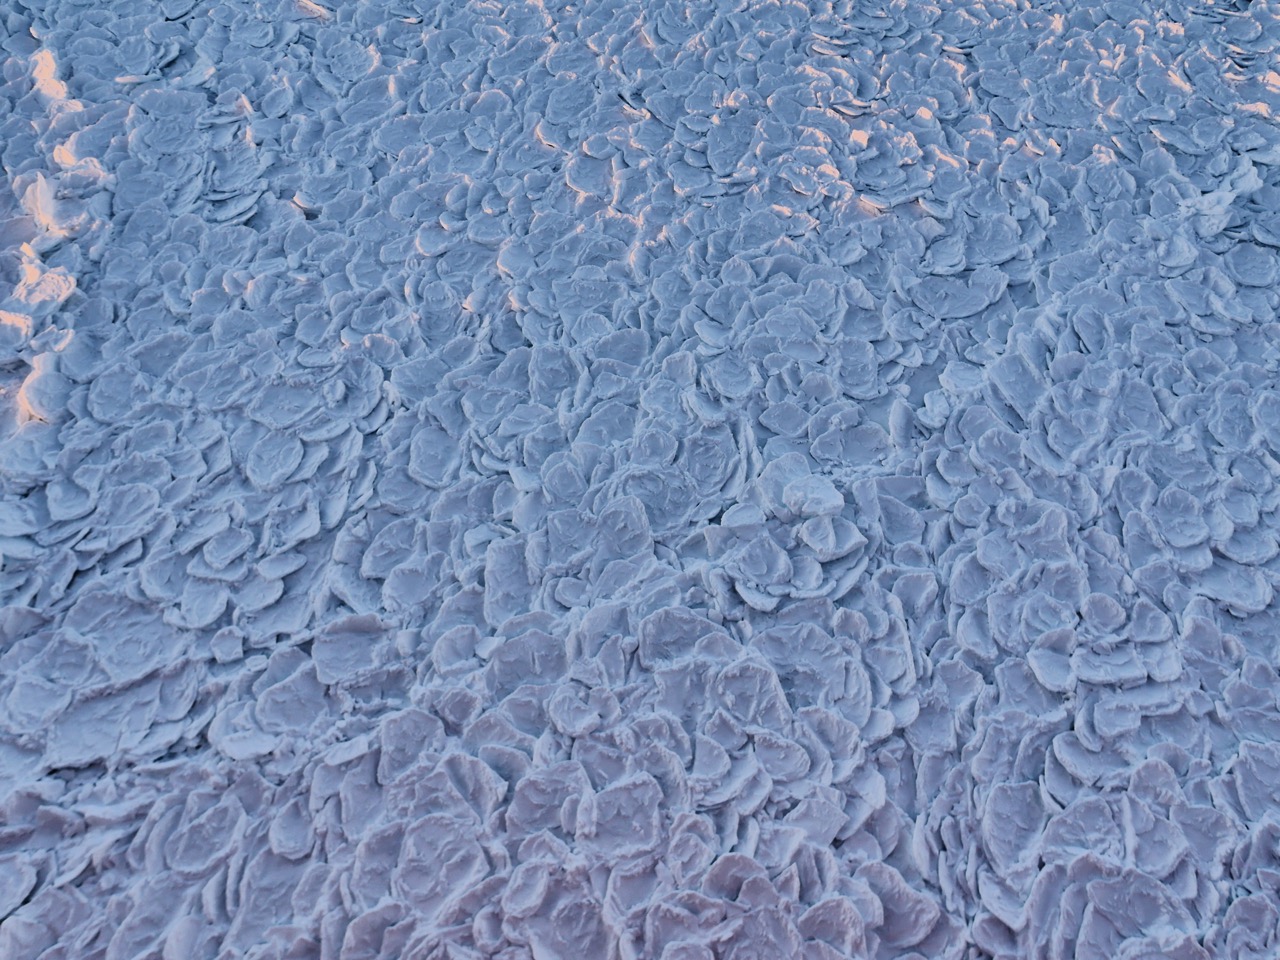 Dragon skin ice Ross Sea 